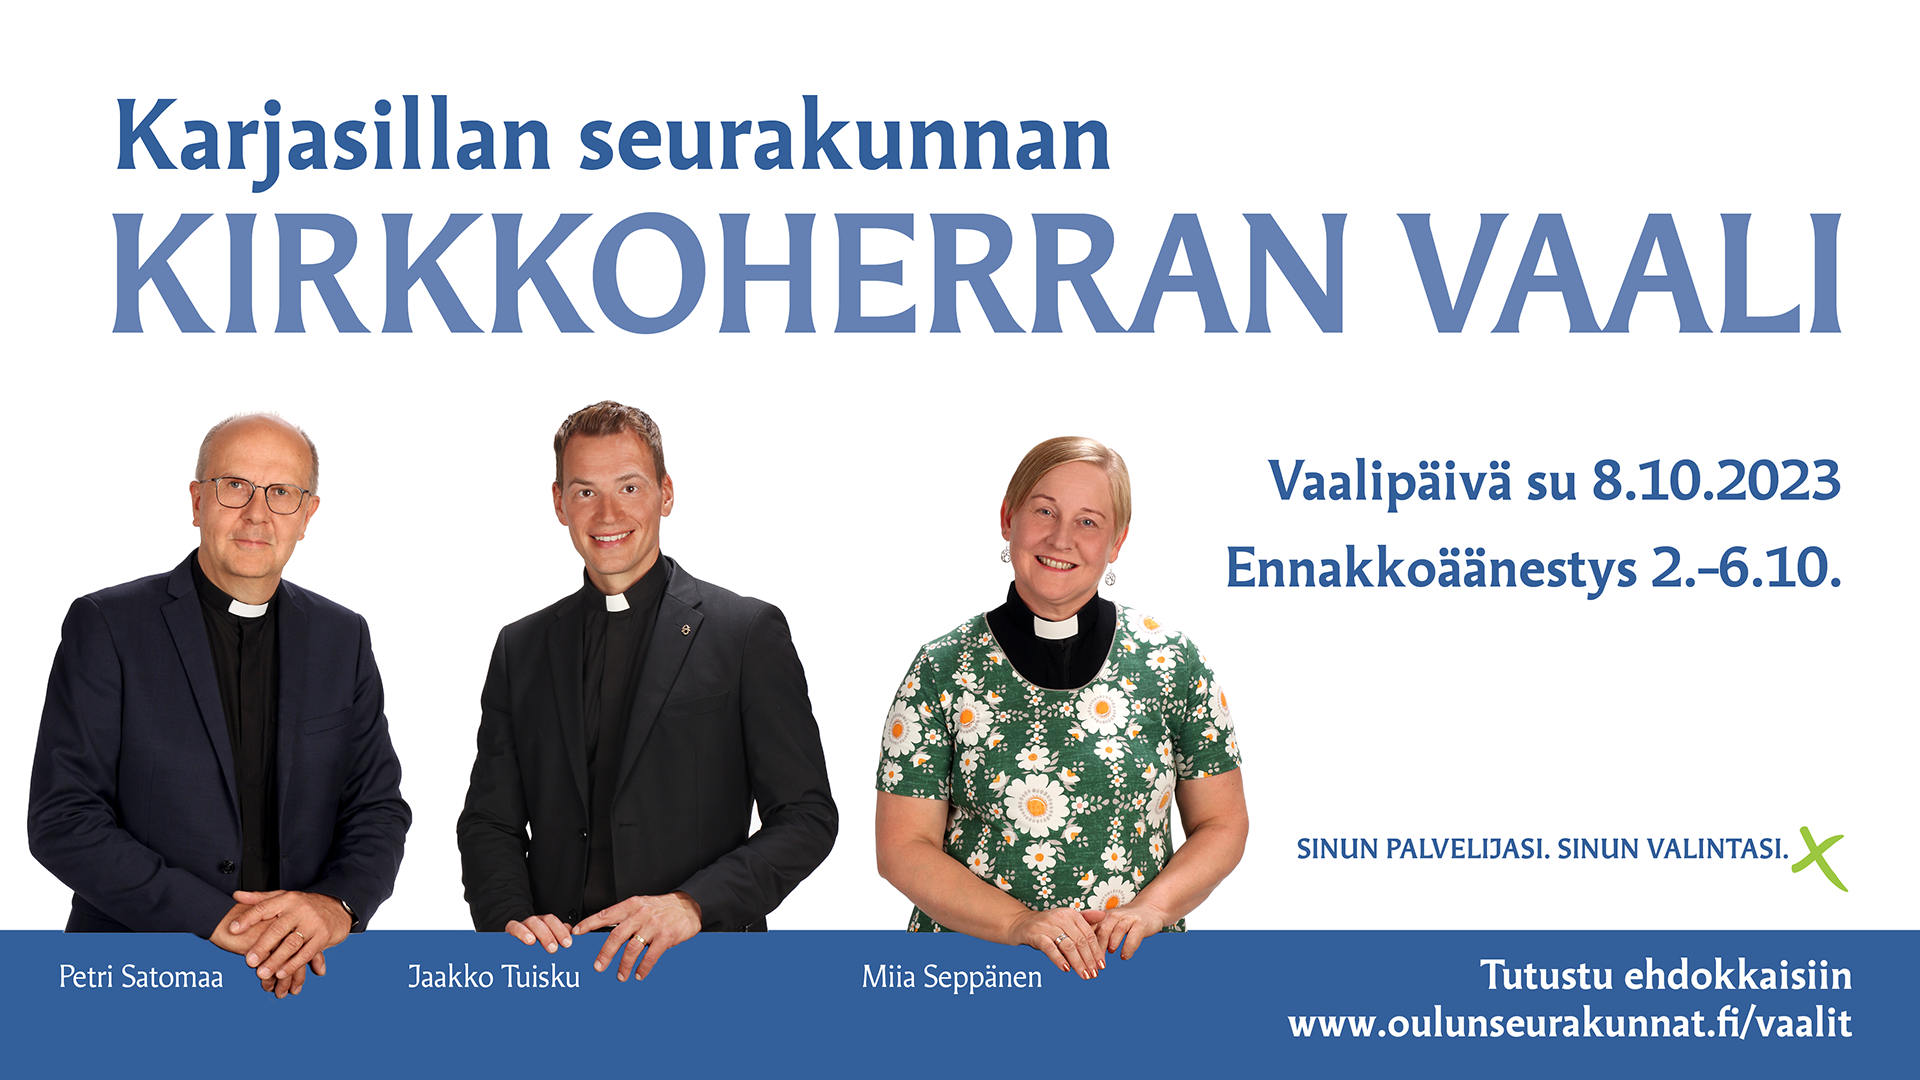 Kolmen ehdokkaan kuvat, Petri Satomaan, Jaakko Tuiskun ja Miia Seppäsen sekä tieto Karjasillan khranvaaleista